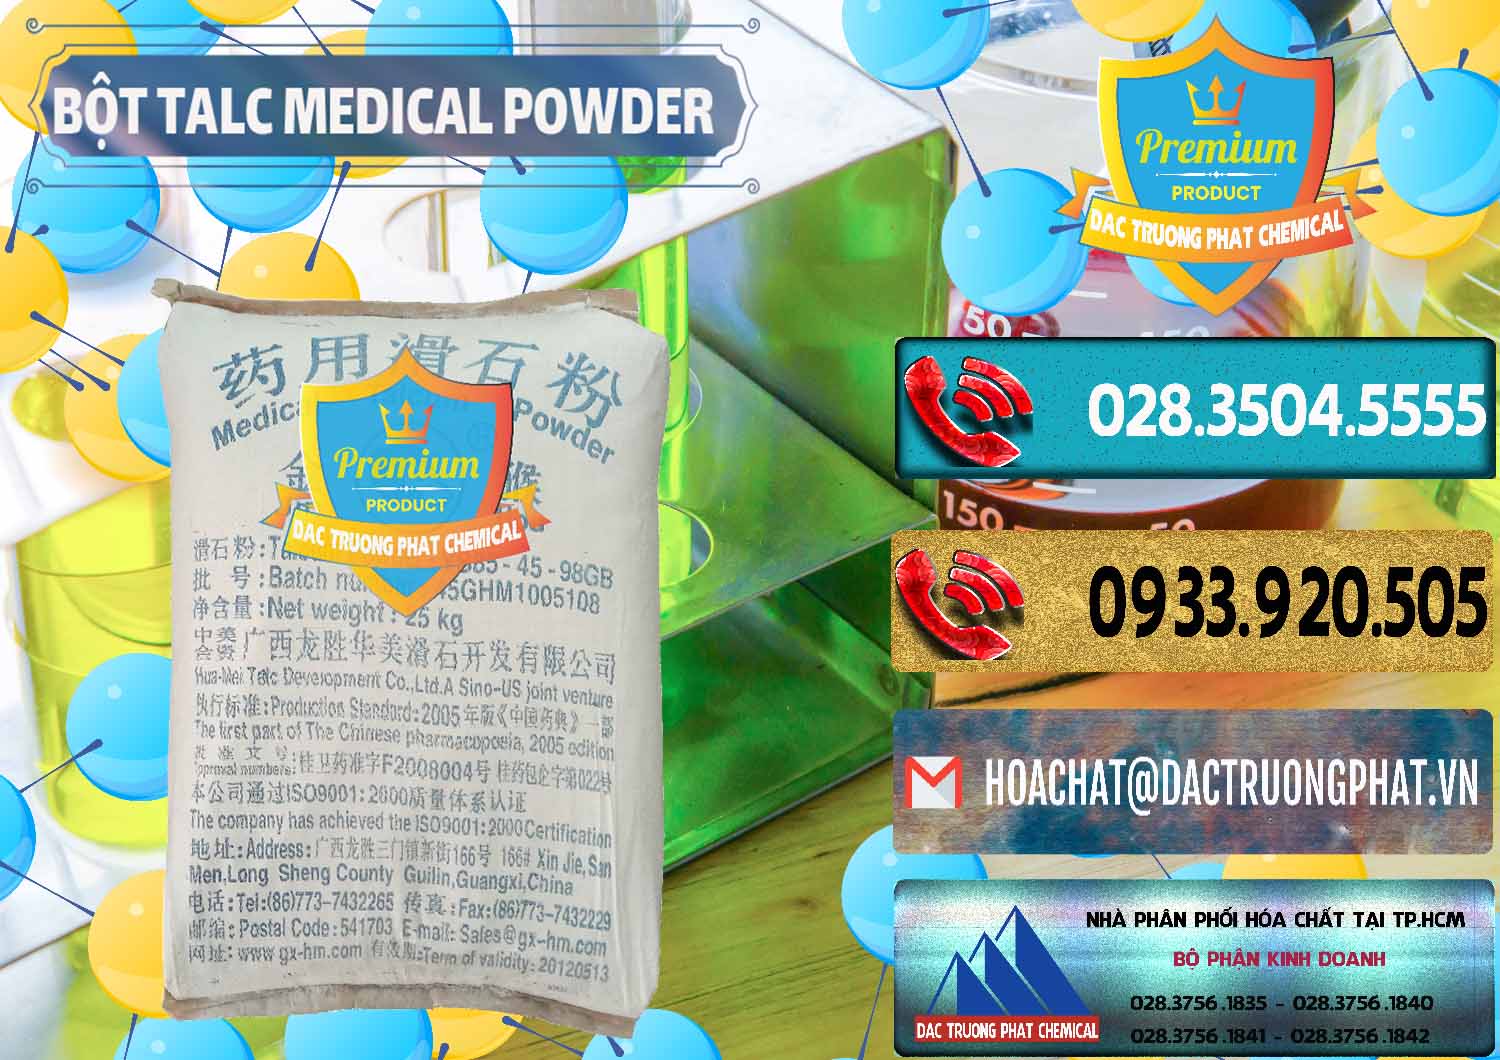 Cty chuyên bán & cung ứng Bột Talc Medical Powder Trung Quốc China - 0036 - Đơn vị chuyên cung cấp _ bán hóa chất tại TP.HCM - hoachatdetnhuom.com